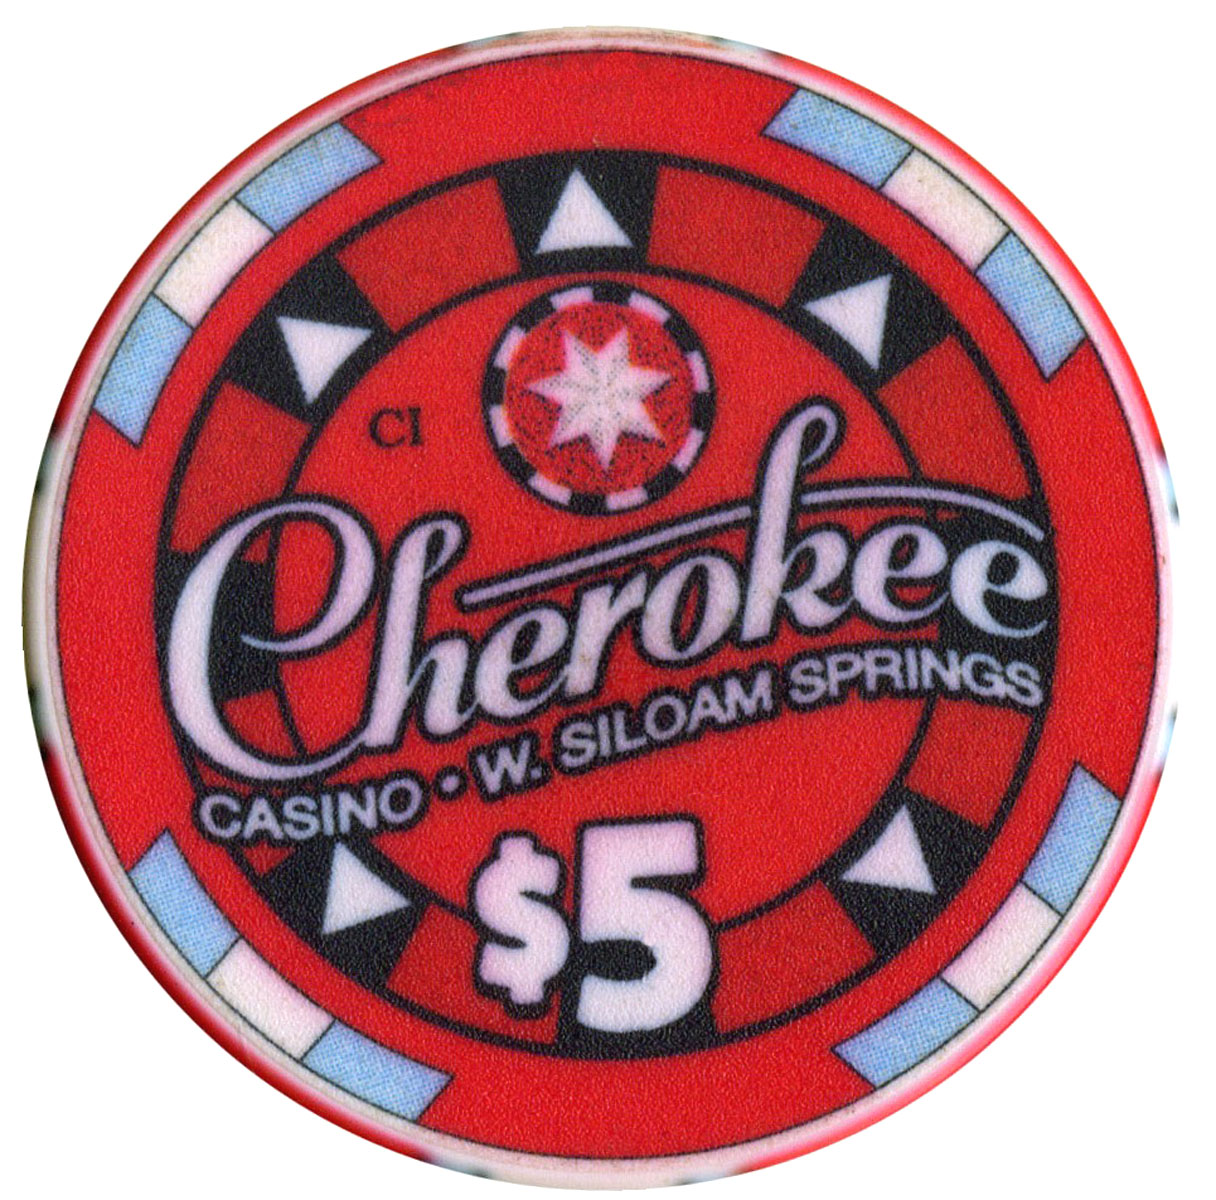 is cherokee casino in siloam springs open